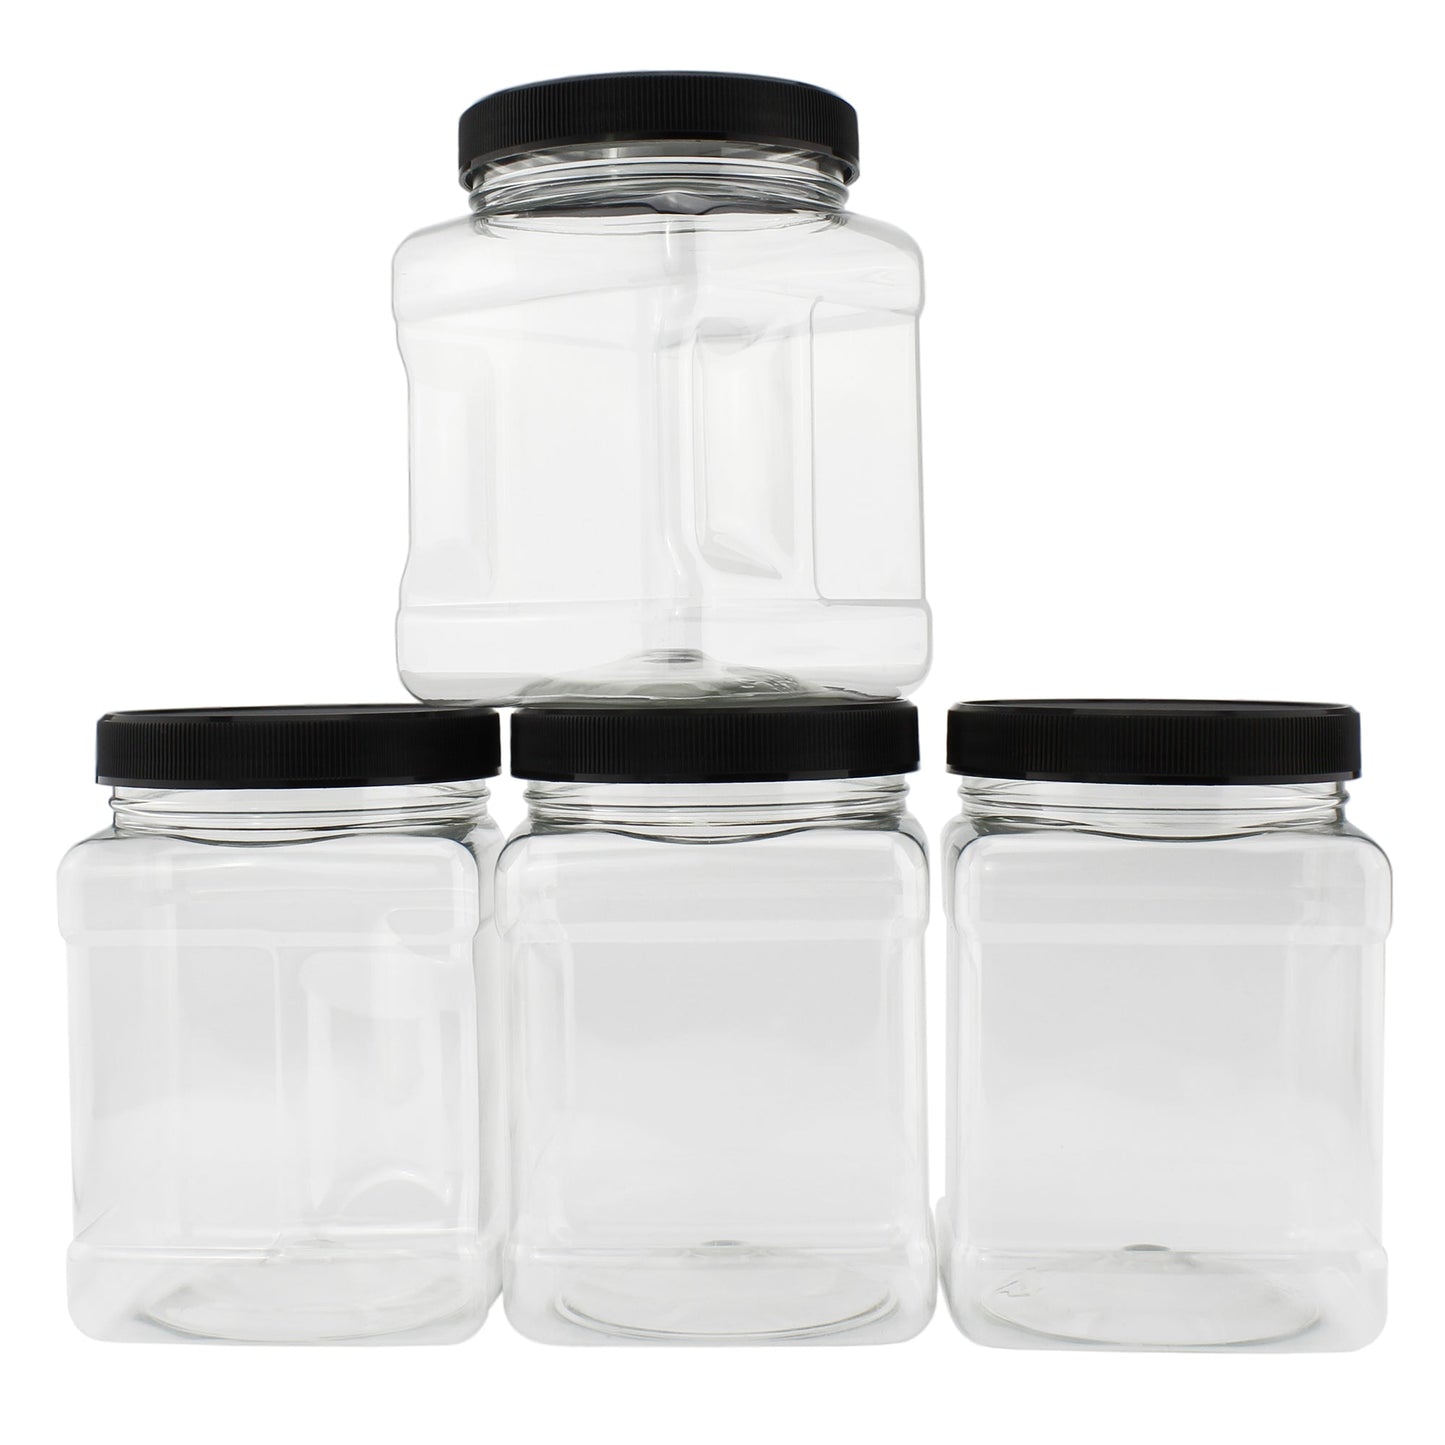 32oz Square Plastic Jars (4-Pack) - sh1470cb032oz